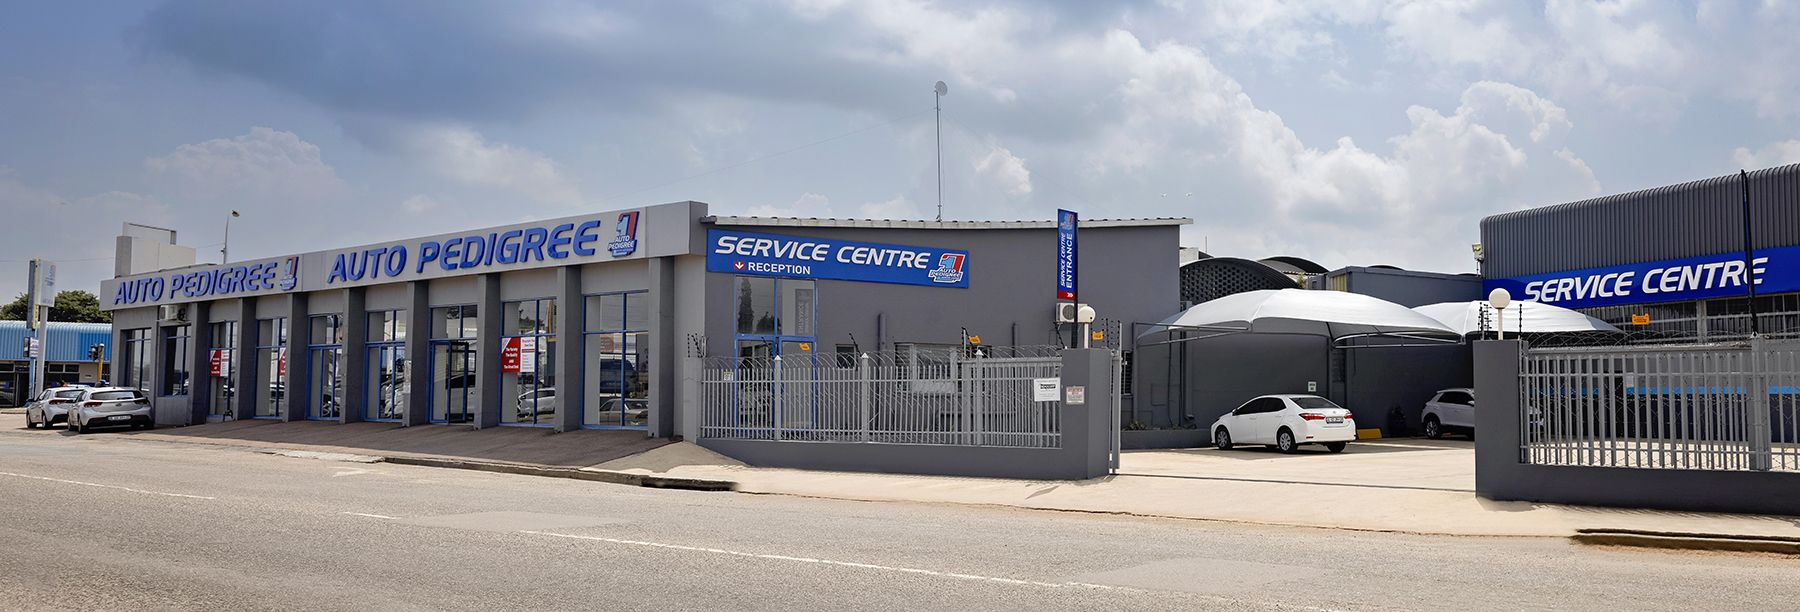 Auto Pedigree Brits Service Centre